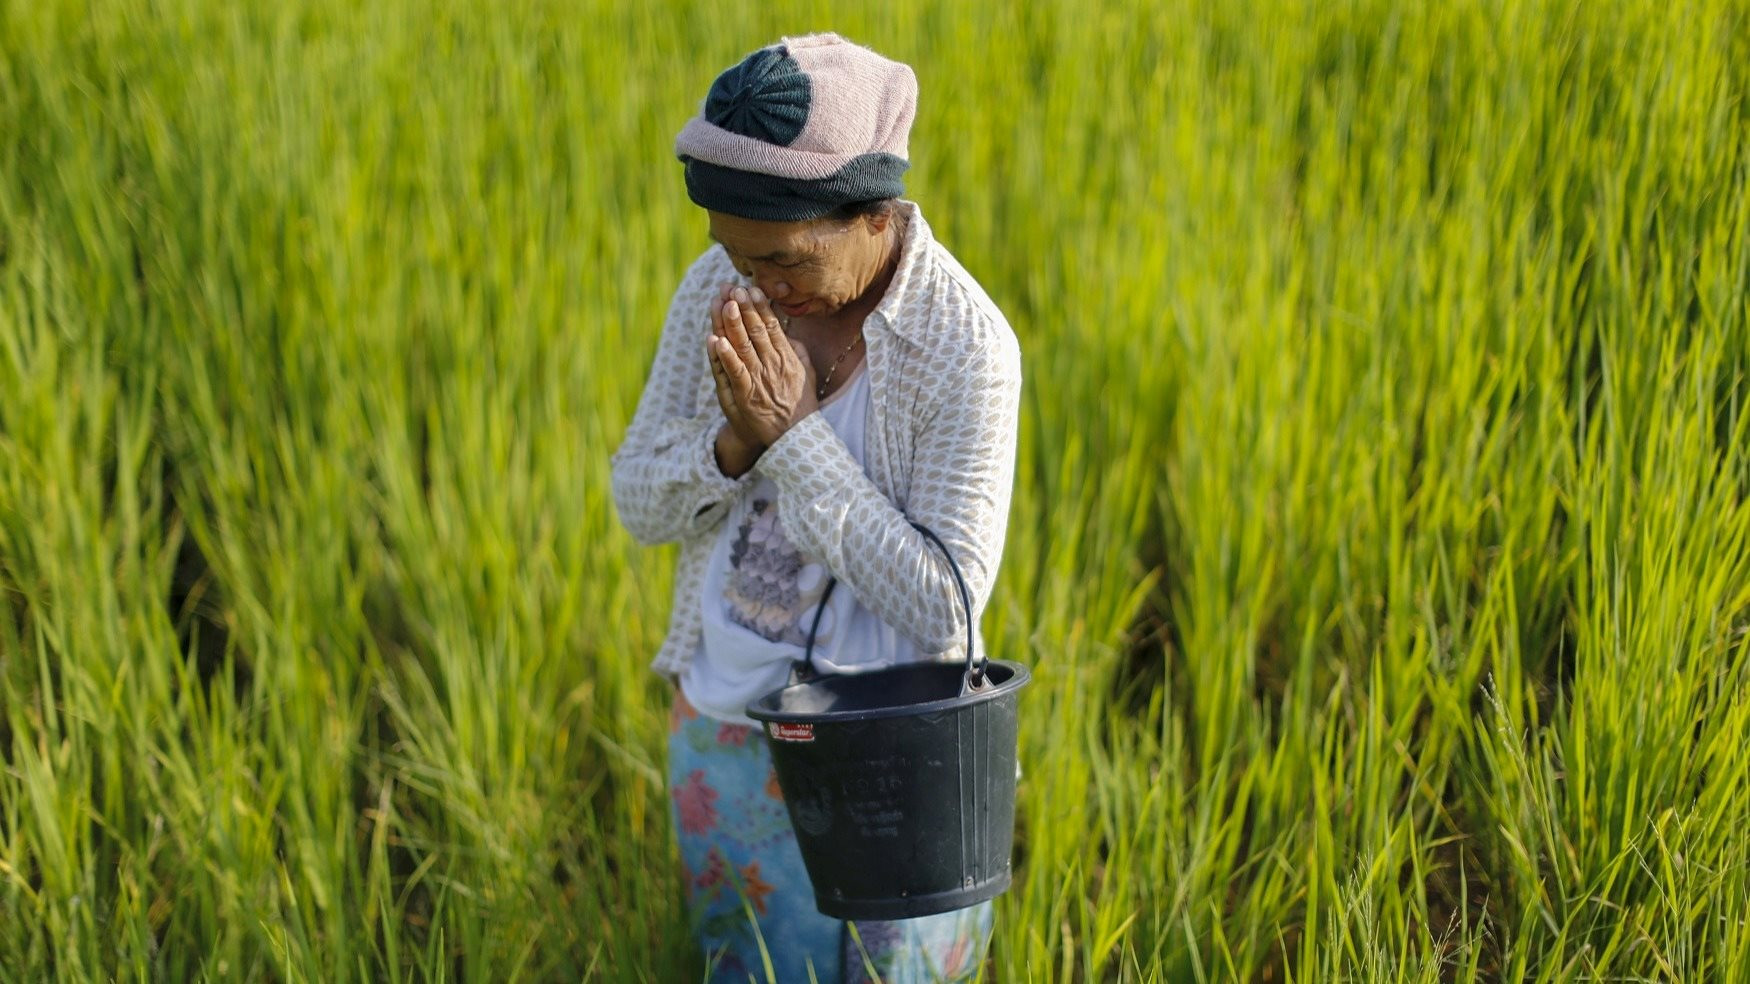 Tương lai của ngành lúa gạo Thái Lan đang bị đe dọa bởi 'kẻ xâm nhập' từ Việt Nam, lan rộng từng cánh đồng mà không biết xuất hiện khi nào - Ảnh 1.